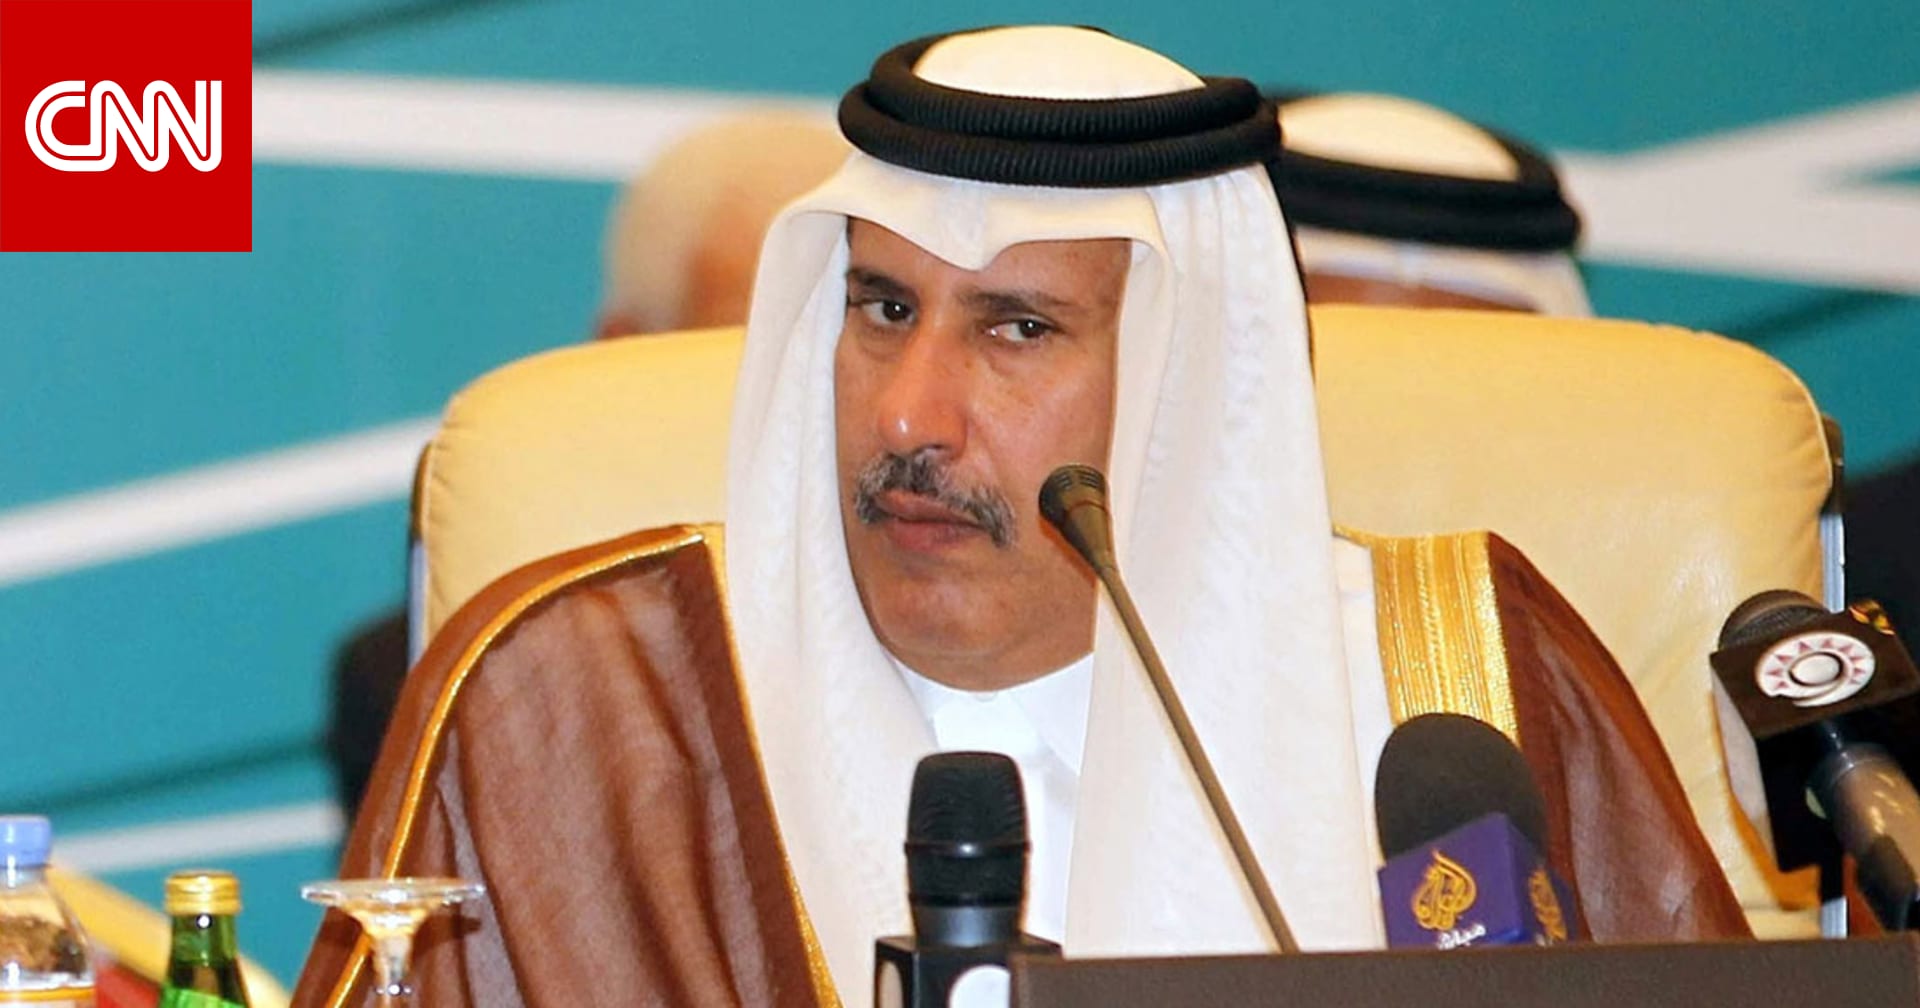 أول تغريدة لرئيس وزراء قطر الأسبق حمد بن جاسم عن عمليات تركيا بسوريا و ضحالة التقديرات العربية  - CNN Arabic